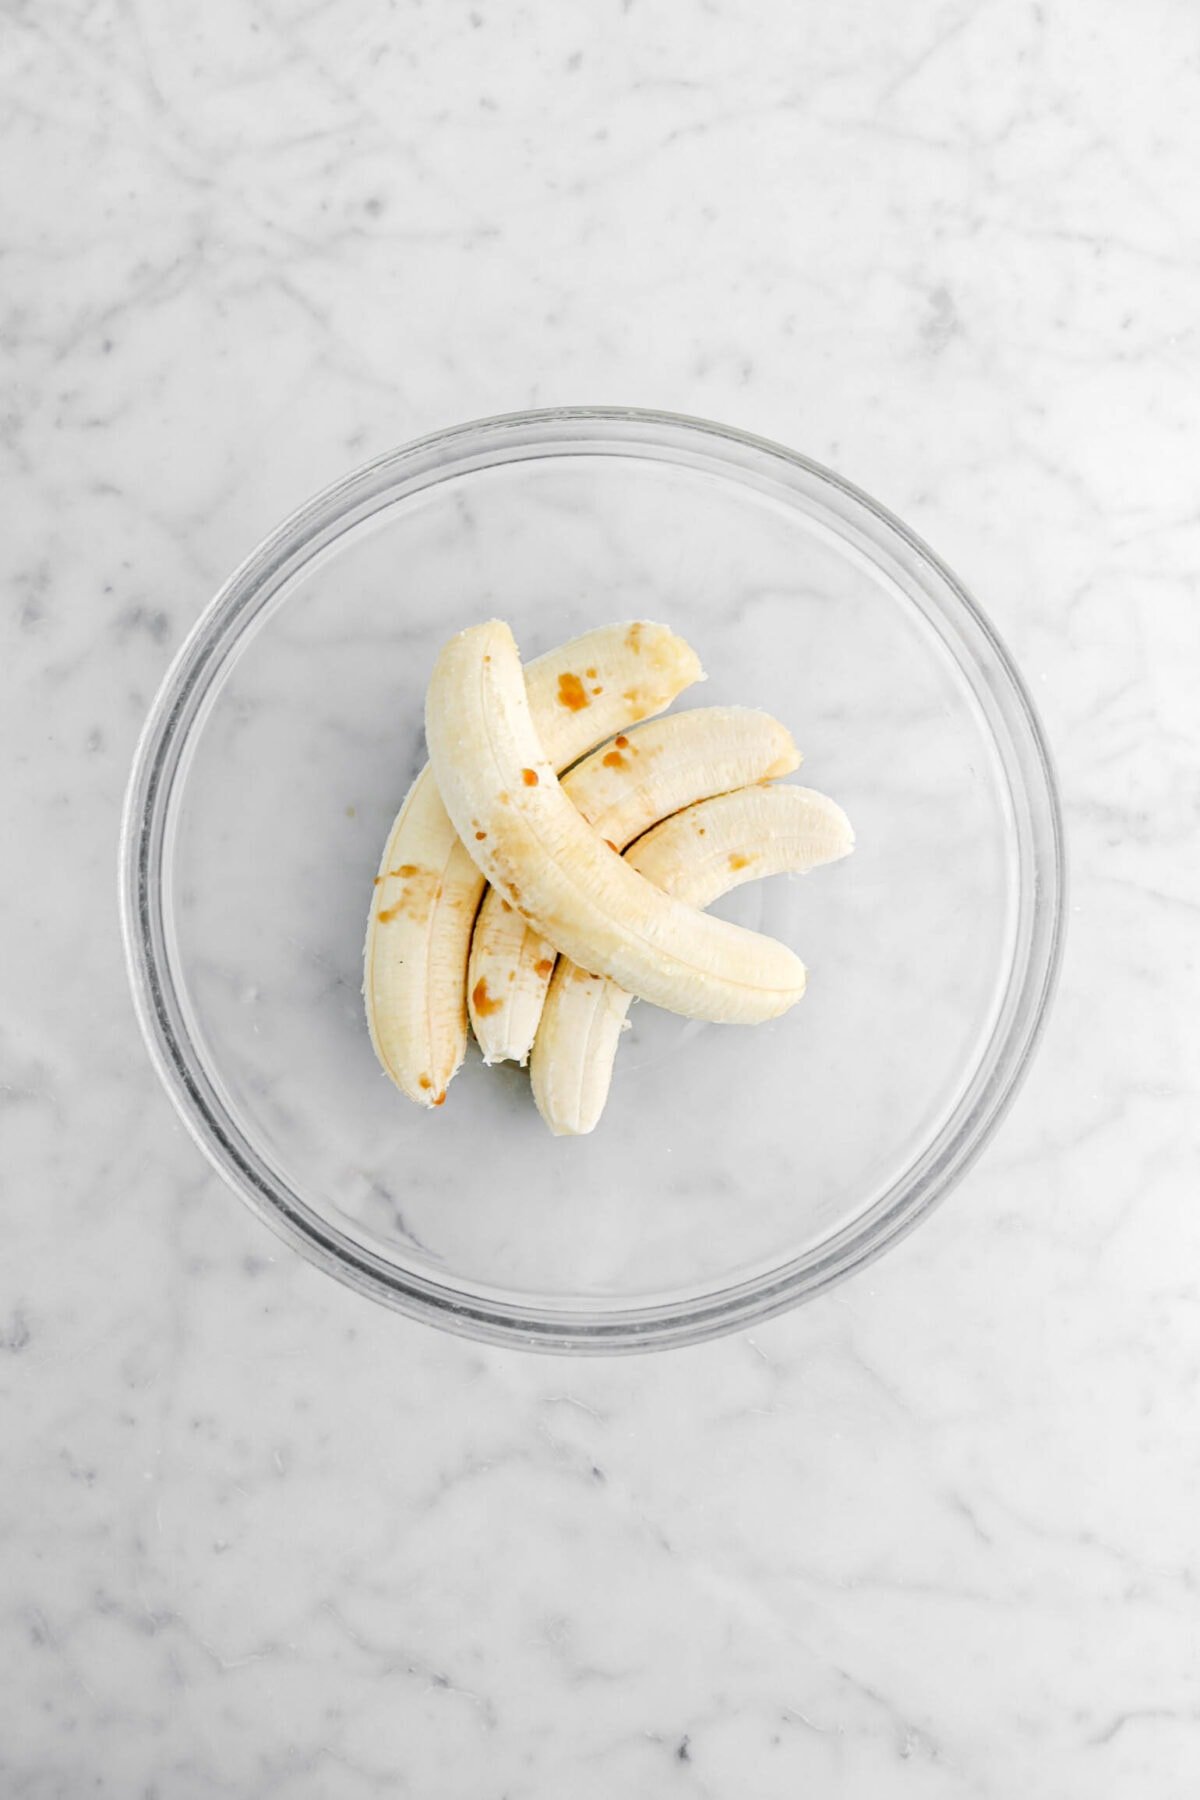 bananas and vanilla in glass bowl.